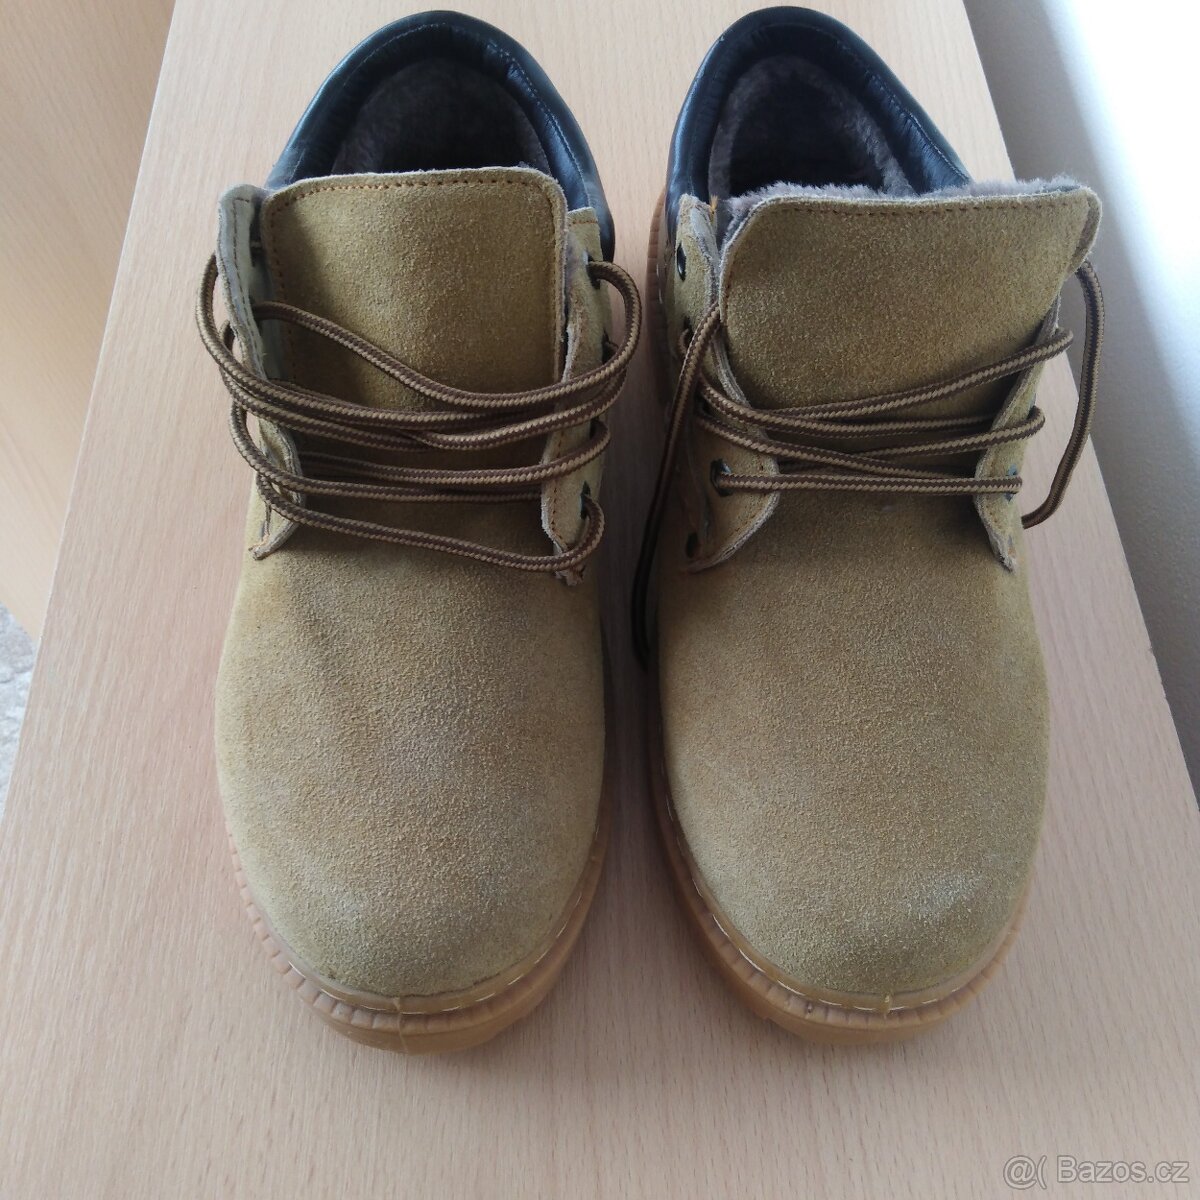 Farmářské boty nízké zateplené béžové